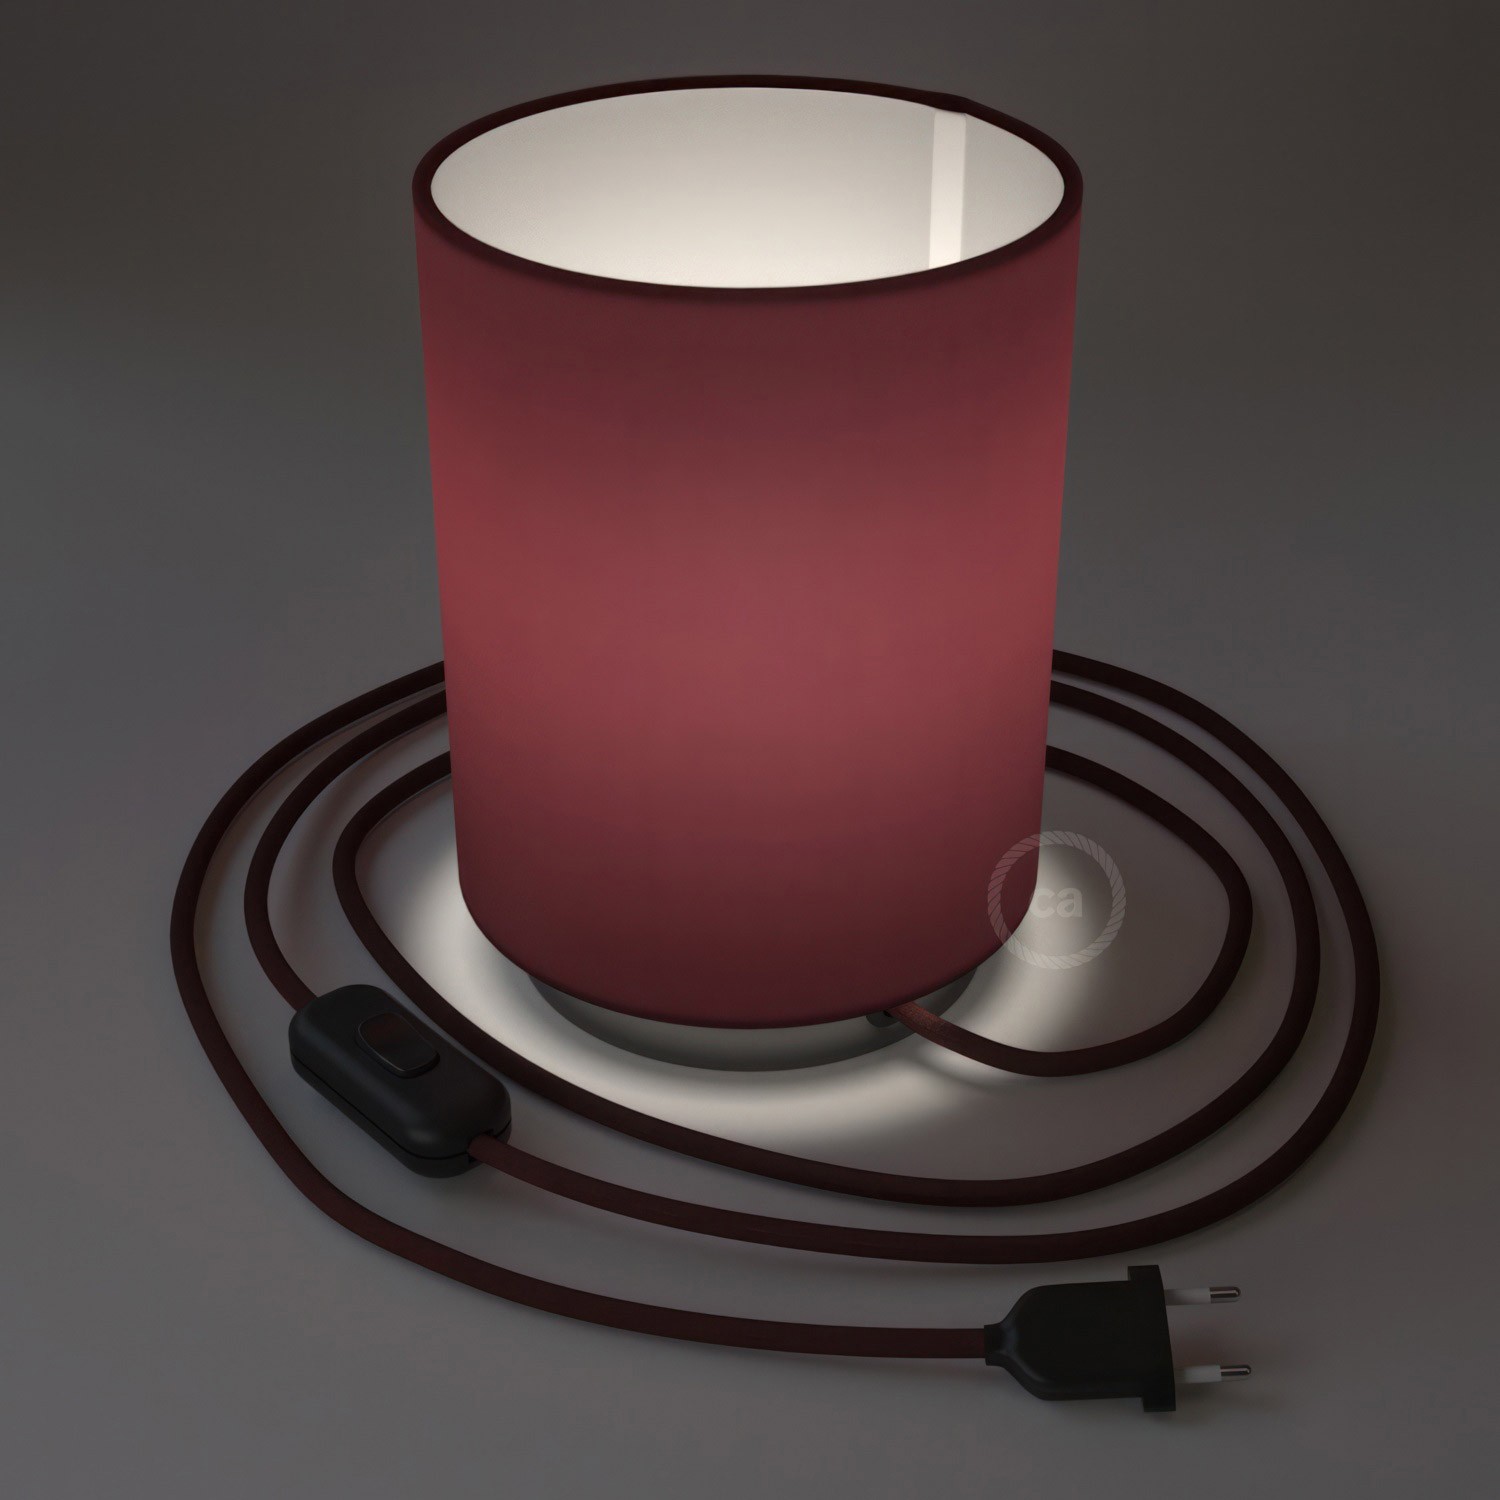 Lampe Posaluce en métal avec abat-jour Cilindro en toile bordeaux, avec câble textile, interrupteur et prise bipolaire